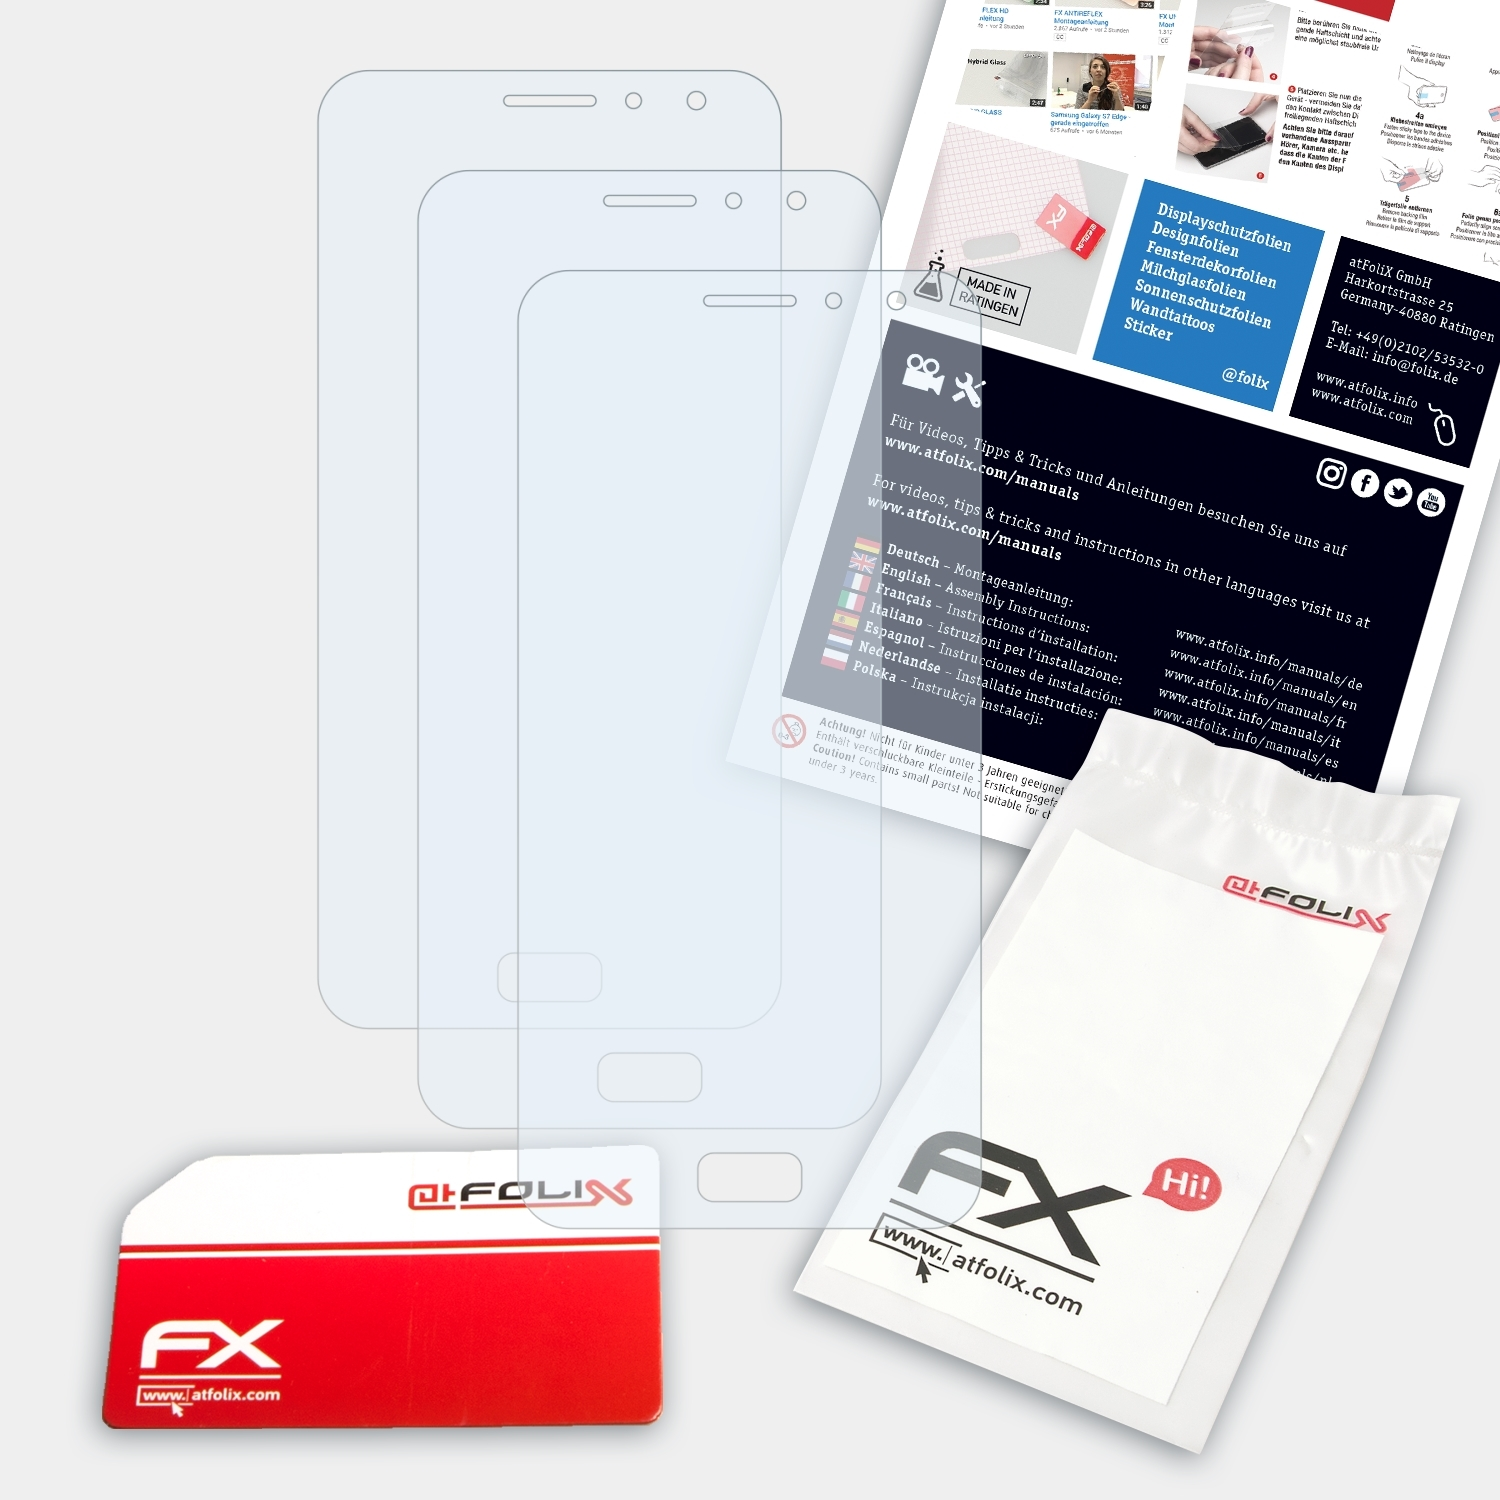 X1) FX-Clear Displayschutz(für ATFOLIX 3x AGM